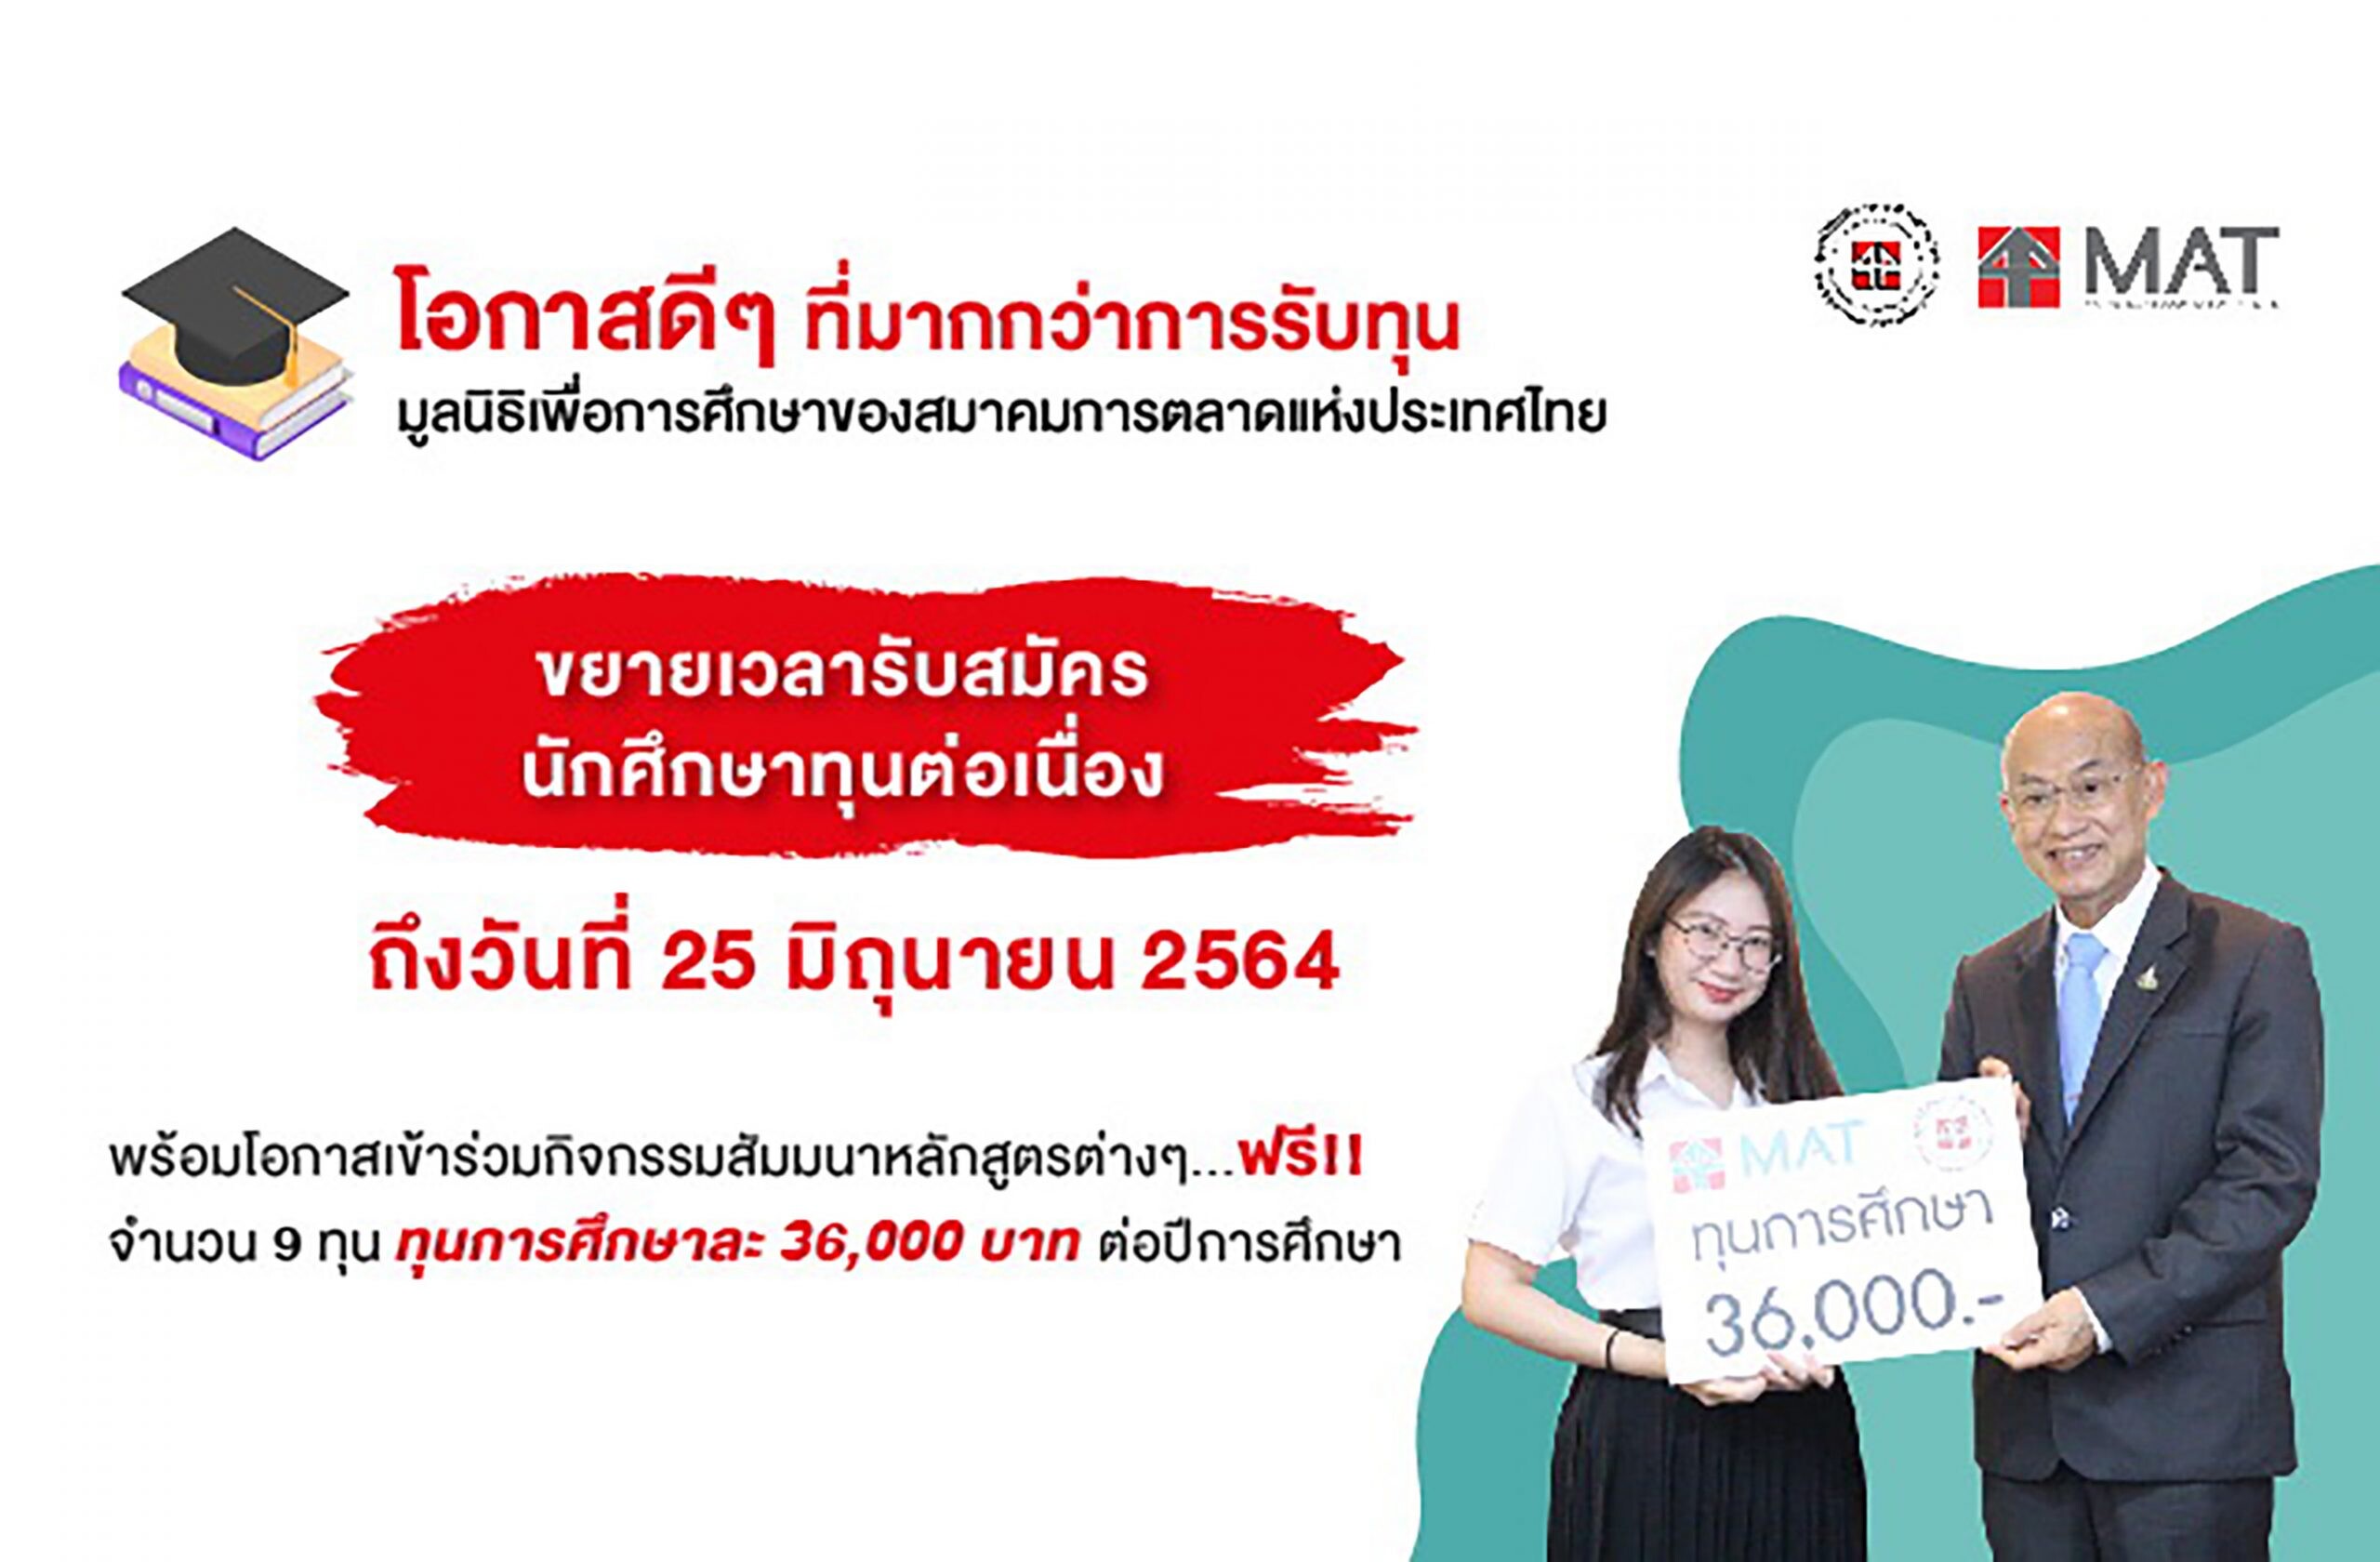 มูลนิธิเพื่อการศึกษาของสมาคมการตลาดแห่งประเทศไทย ขยายเวลารับสมัครนักศึกษาทุนฯ